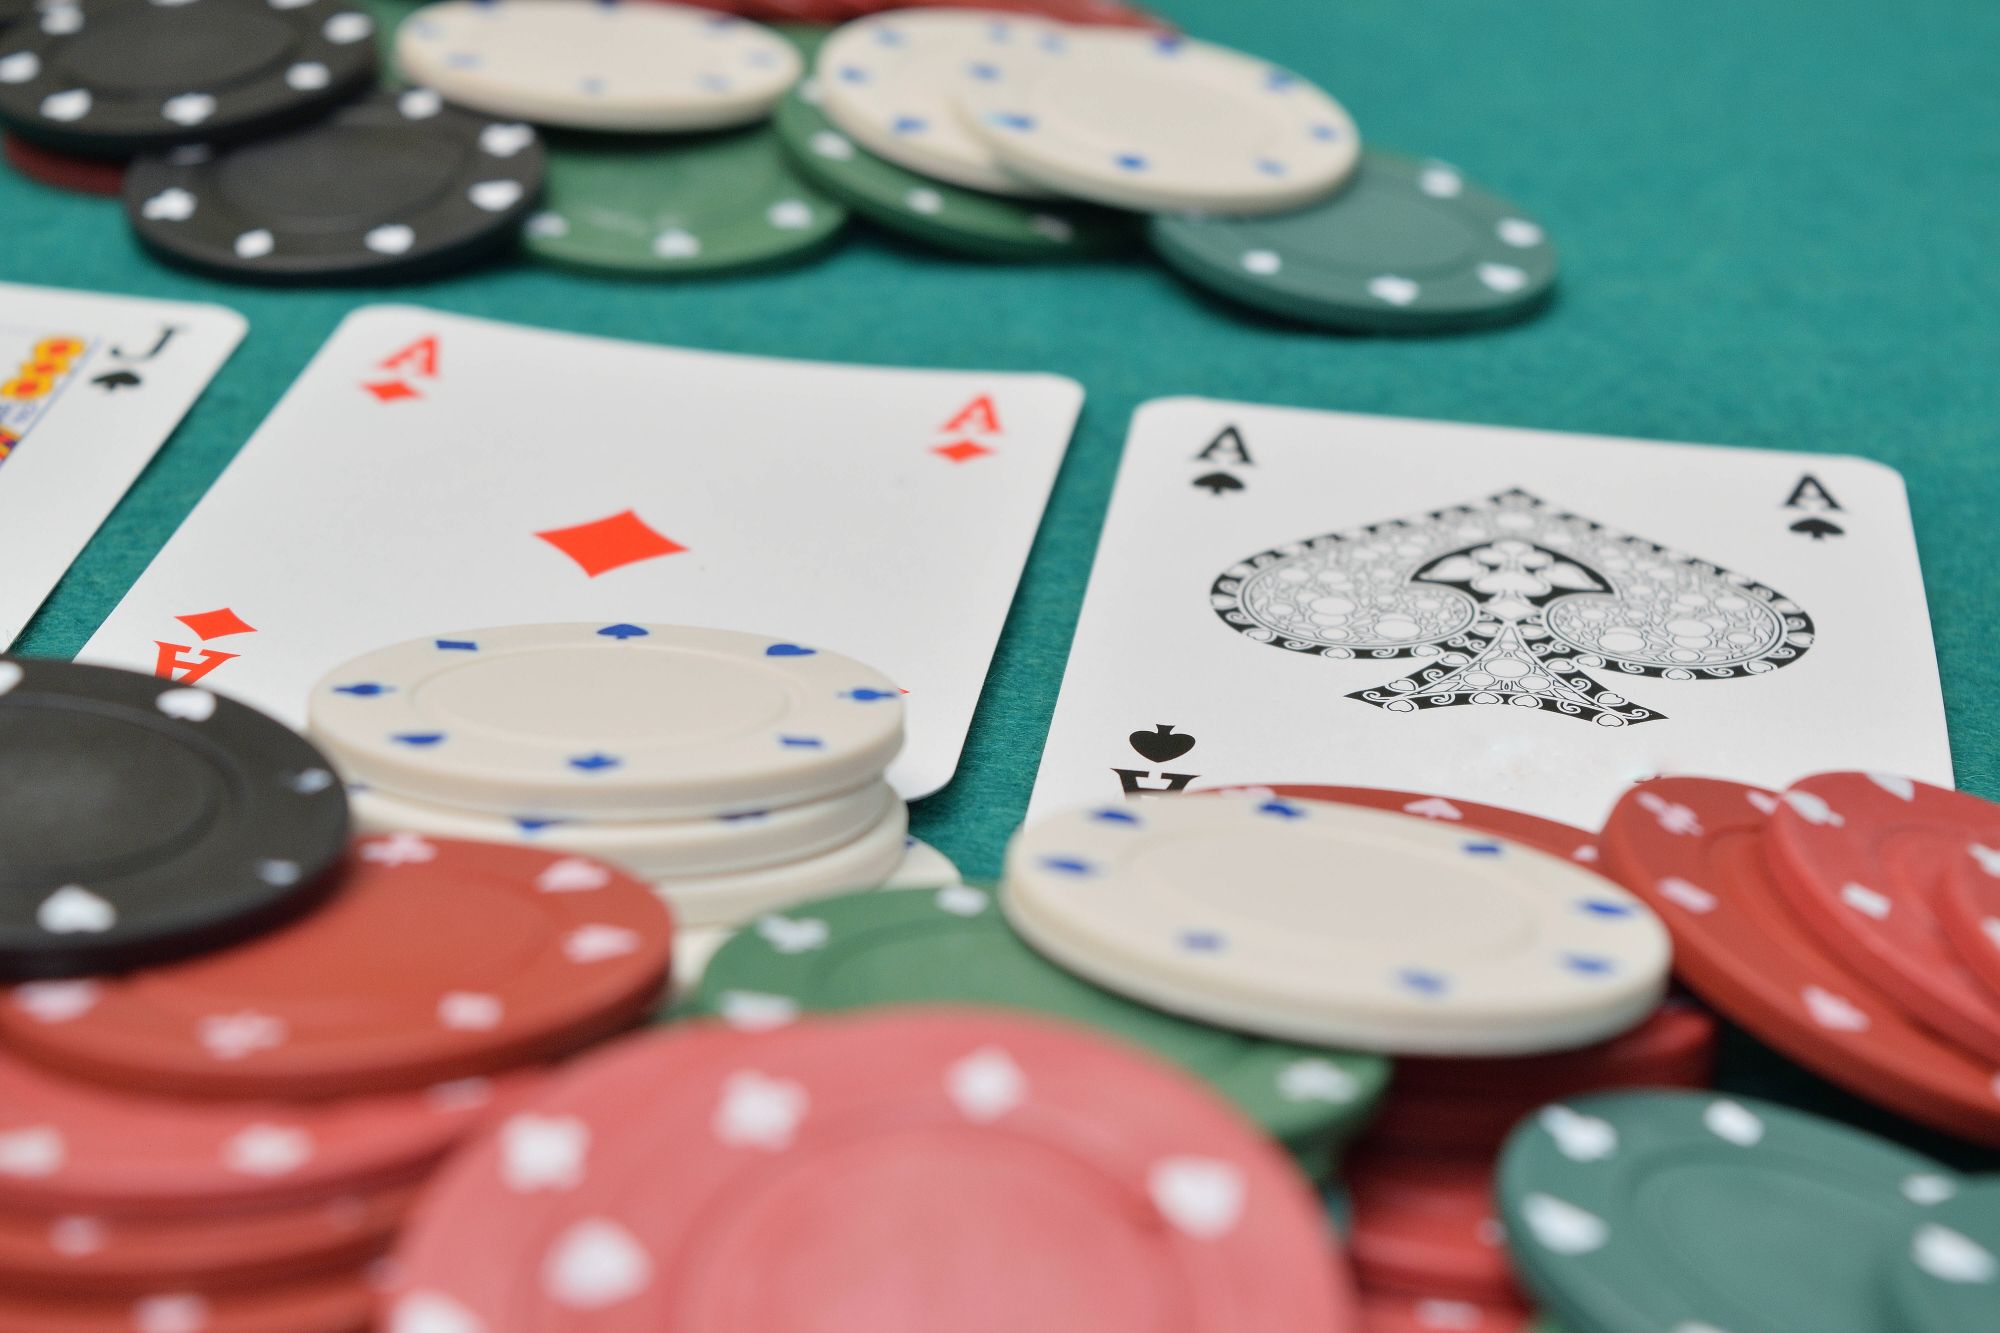  How to Win at Slots | Tipico